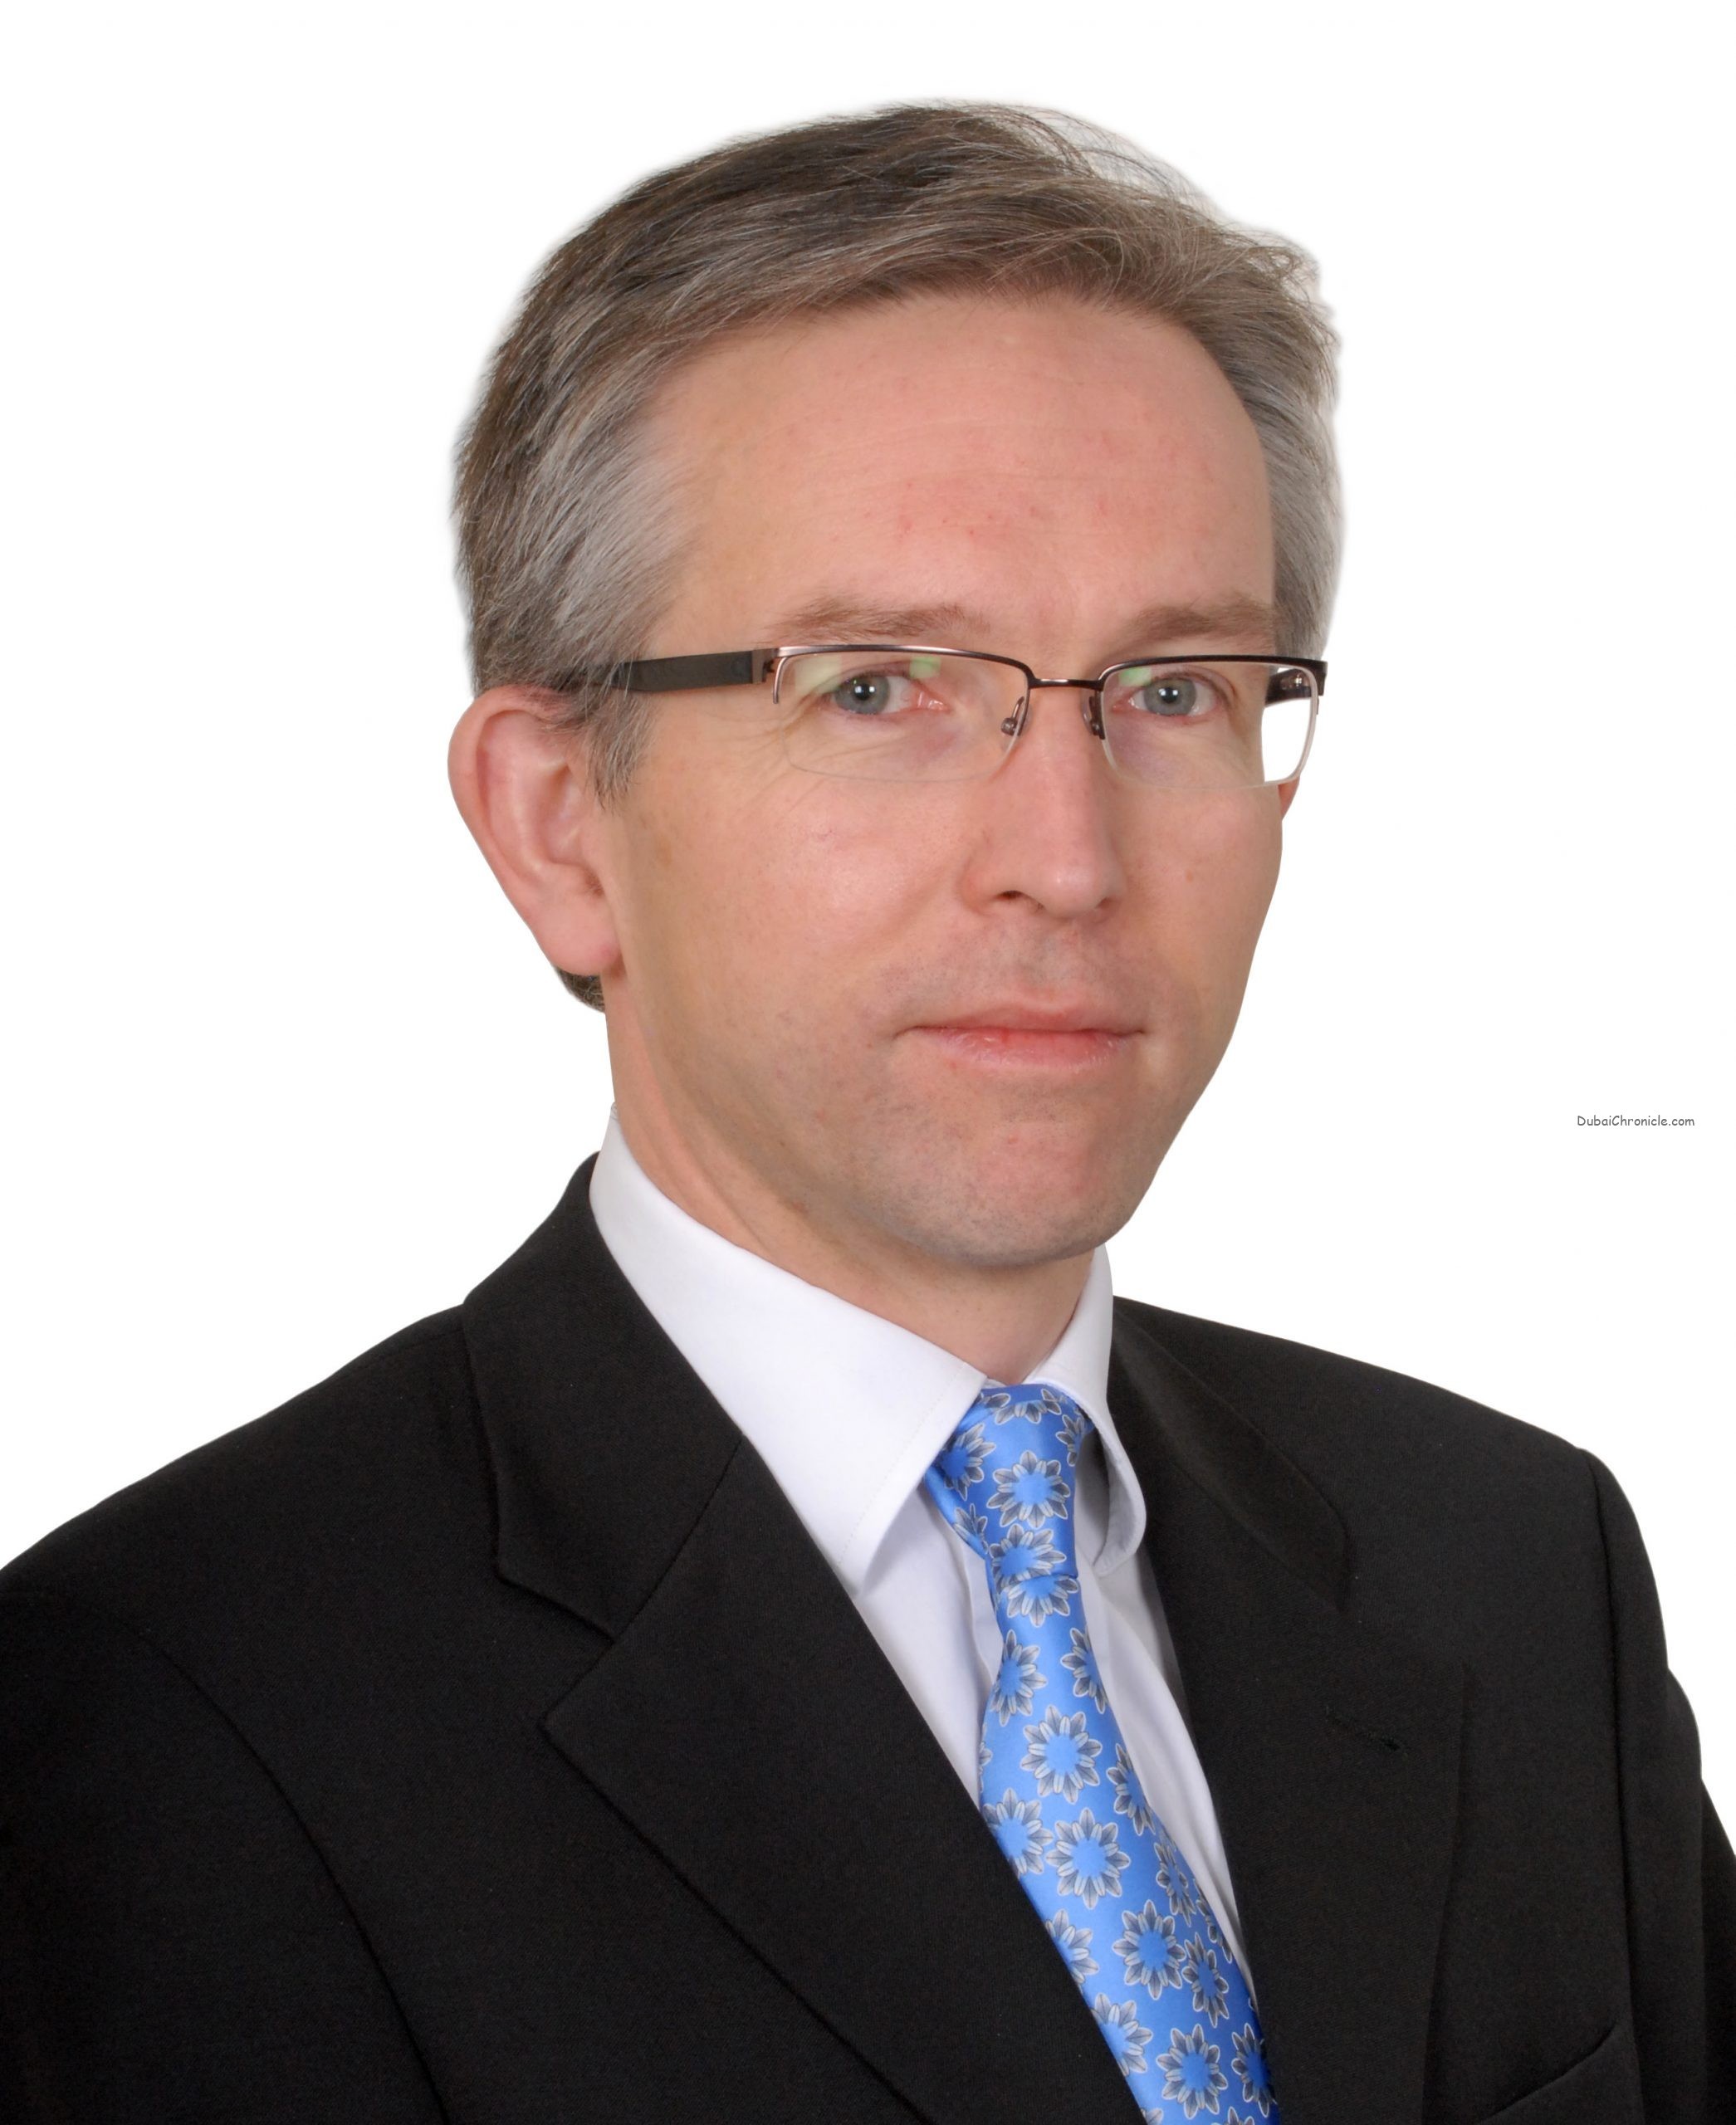 Richard Dunbar, Head of Multi-Asset Research at Aberdeen Standard Investments